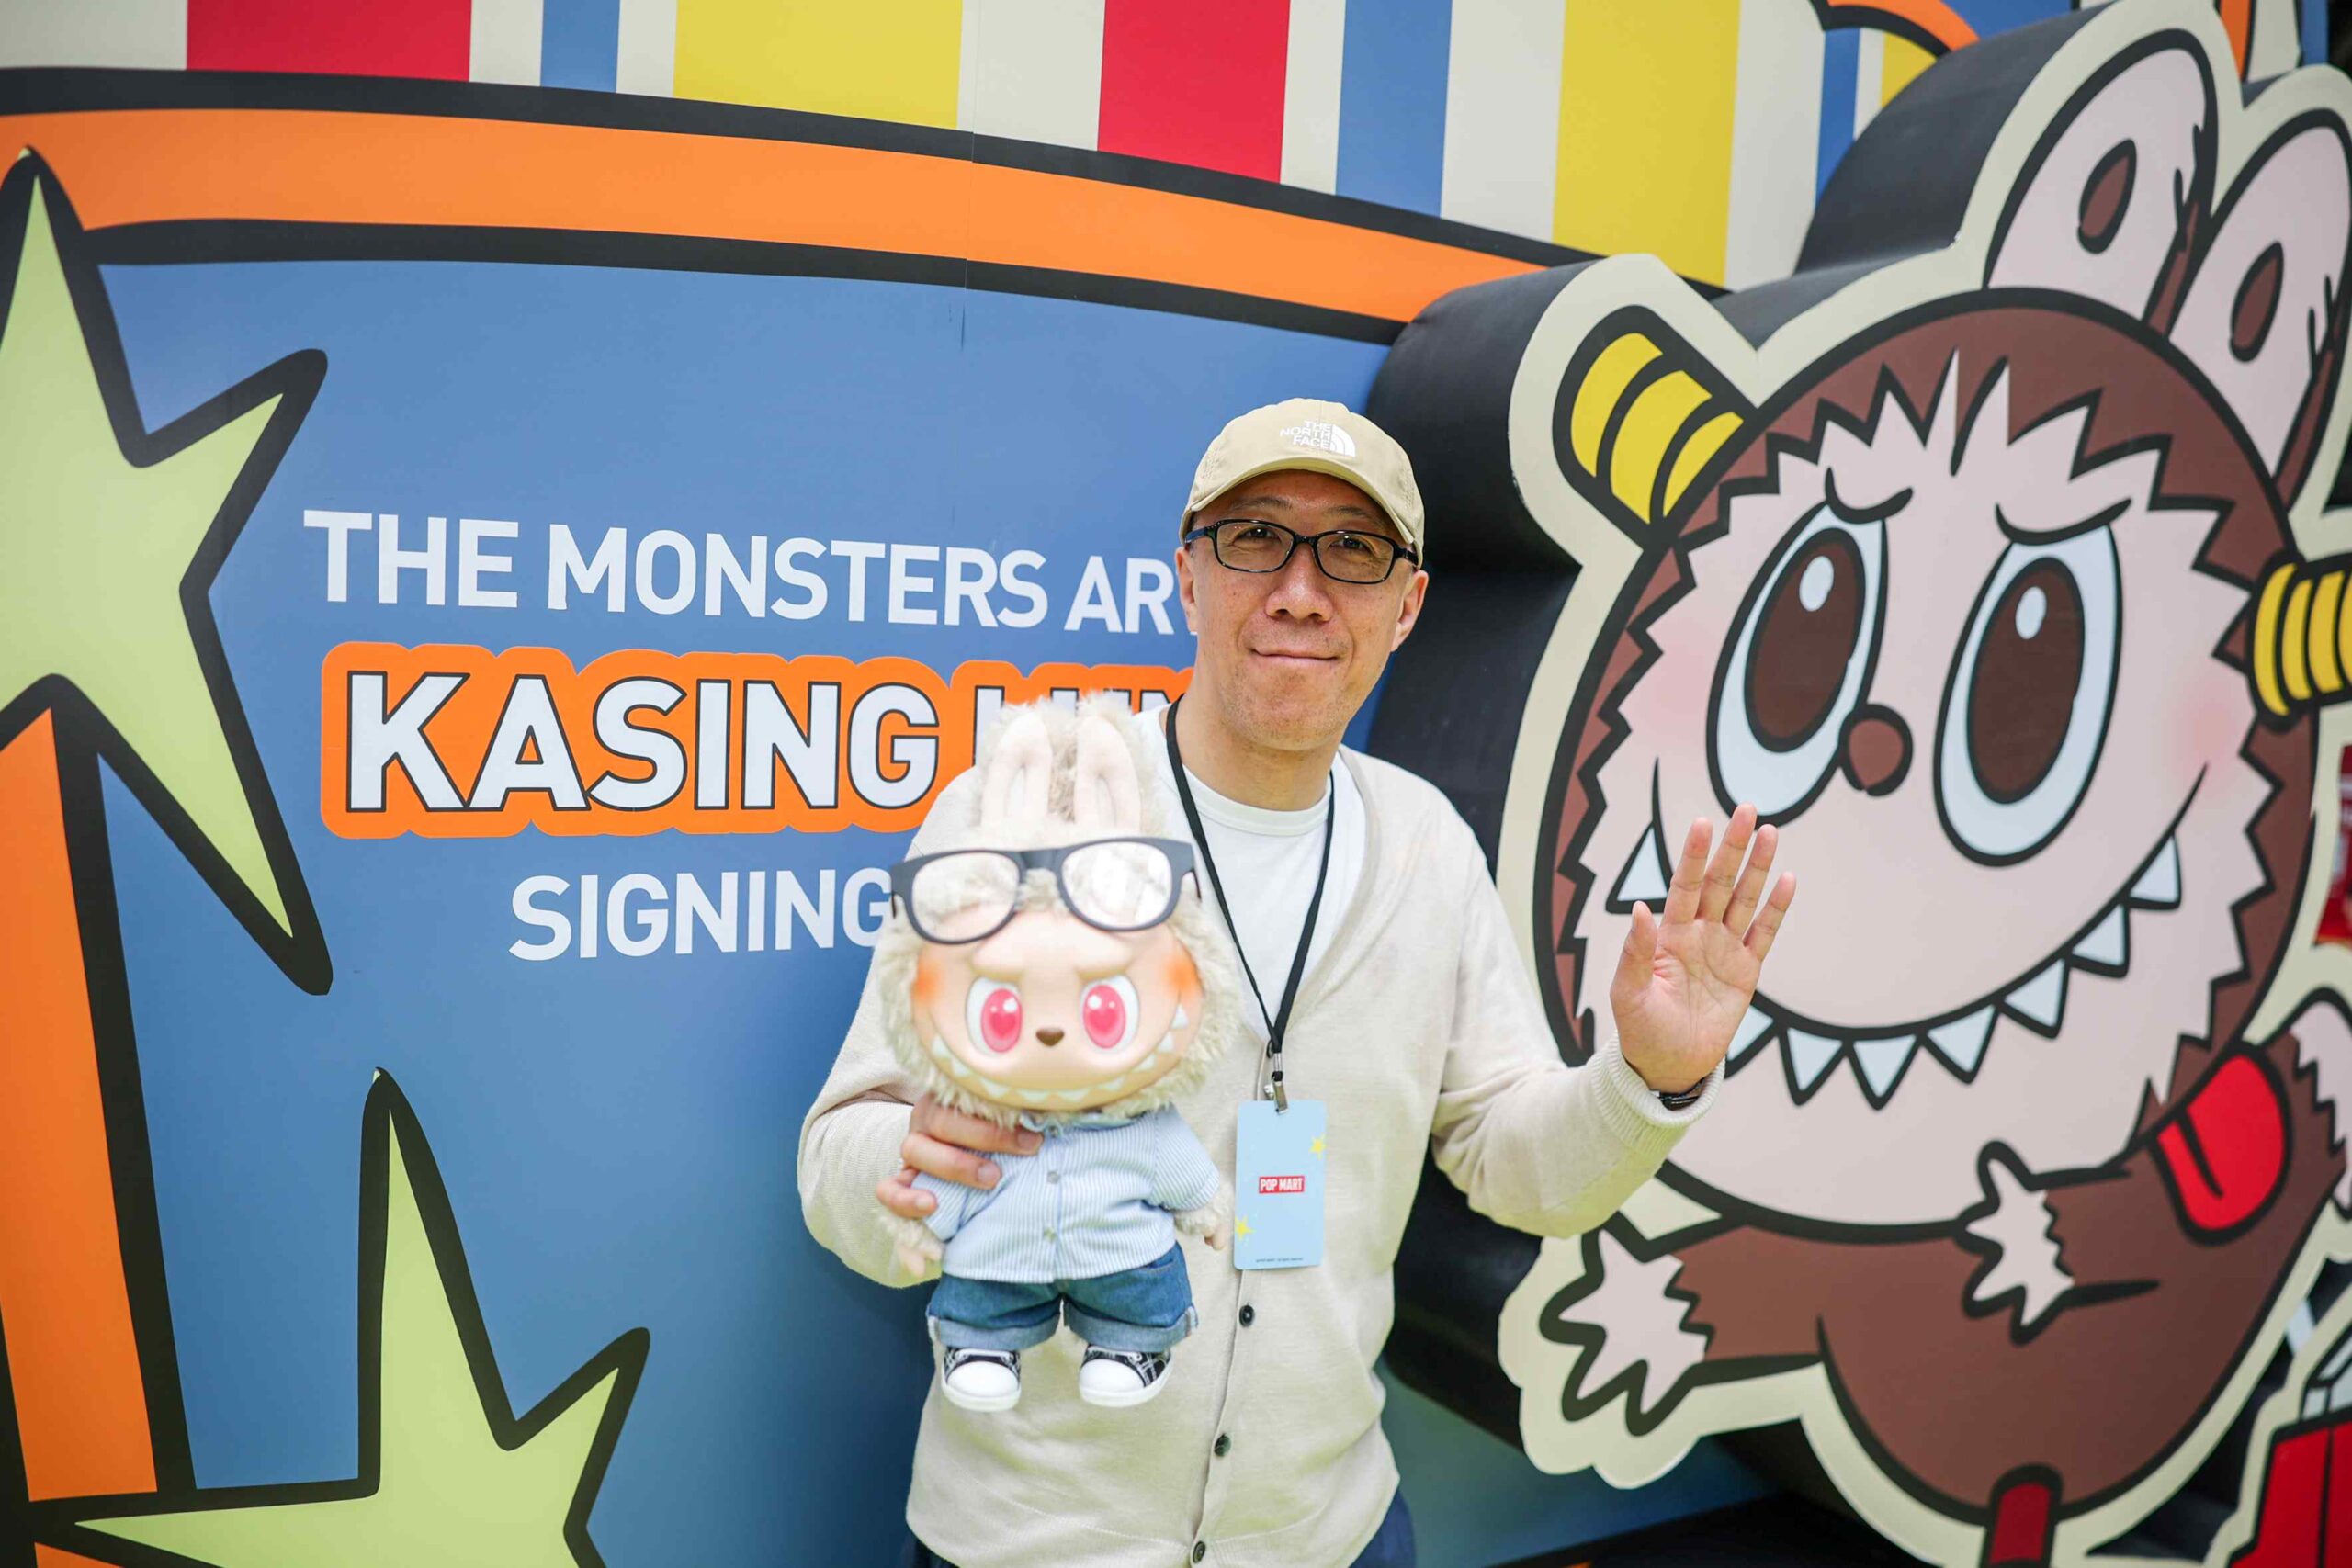  ป๊อป มาร์ท  เซอร์ไพรส์  ศิลปินระดับโลก ผู้ออกแบบจักรวาล The Monsters Series  ‘LABUBU EXCLUSIVE FANSIGN EVENT with Kasing Lung’ 